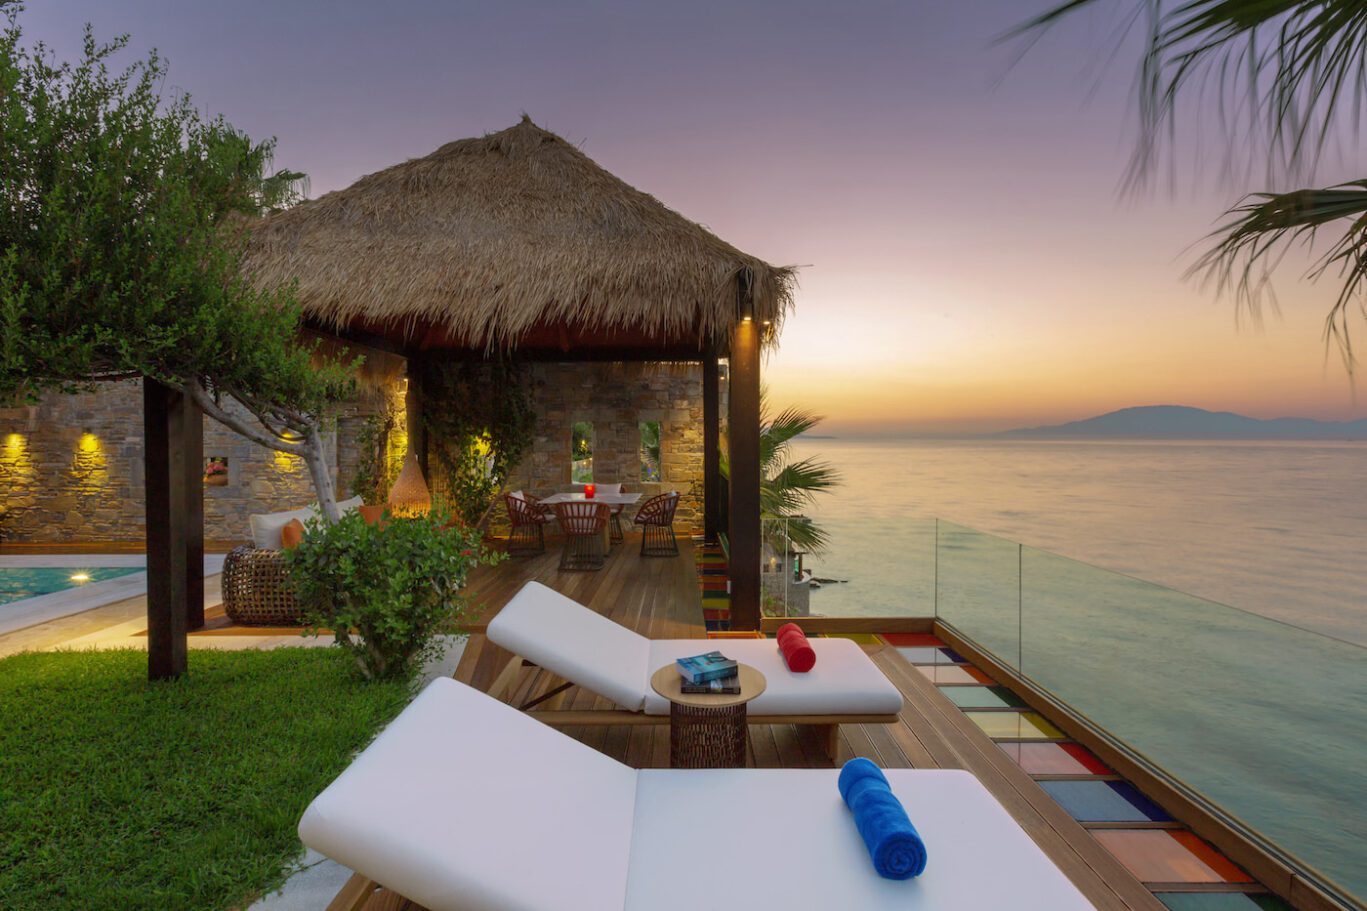 Two-bedroom private ultra luxury villa with sea views Greece PRESIDENTIAL SPA VILLA with private heated pool and private beach Porto Zante Villas & Spa Zakynthos Island